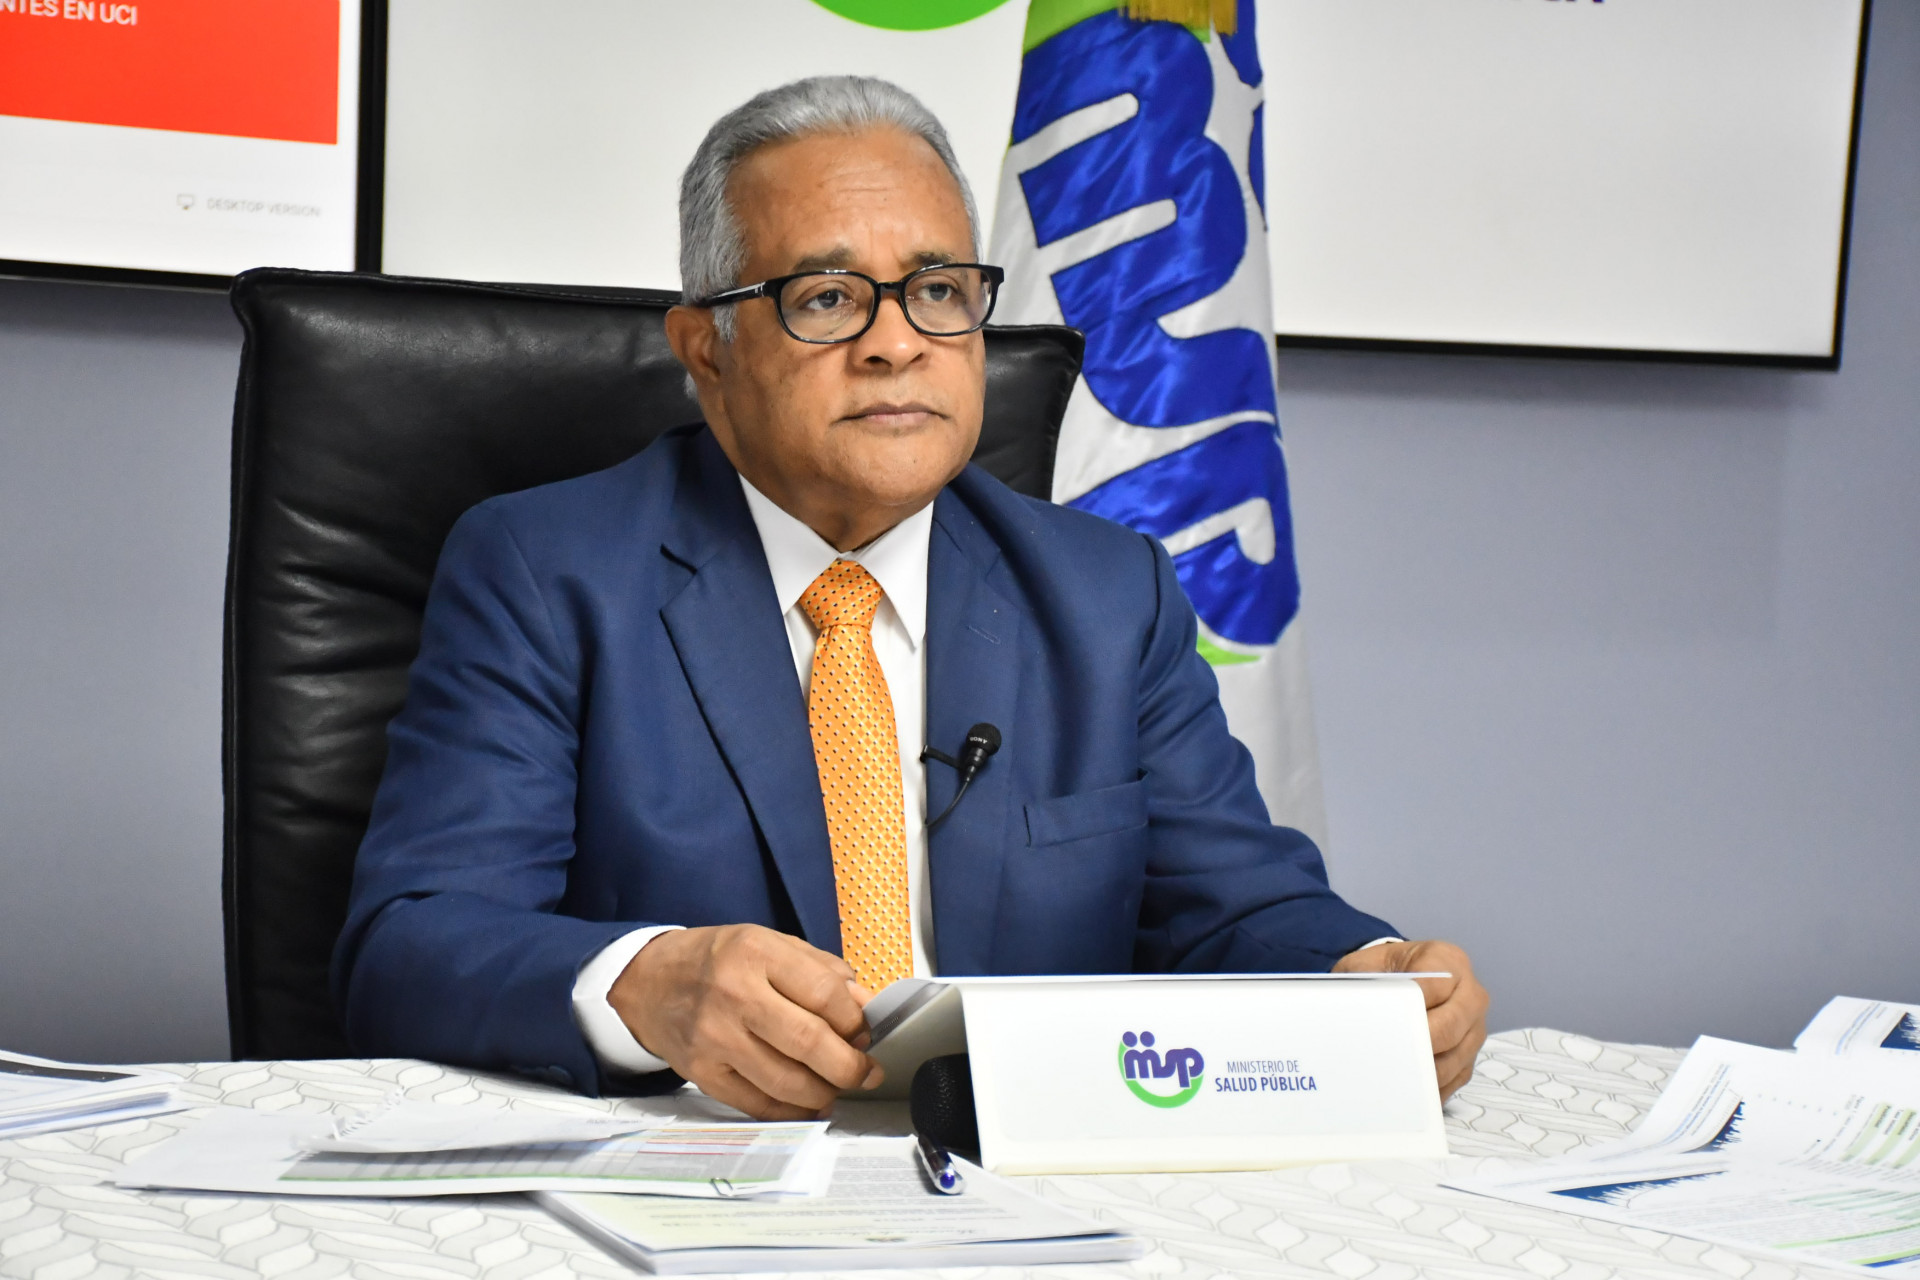 REPÚBLICA DOMINICANA: Salud Pública intervendrá Los Guaricanos y Los Tres Brazos; recuperados de COVID-19 en RD ascienden a 19,564